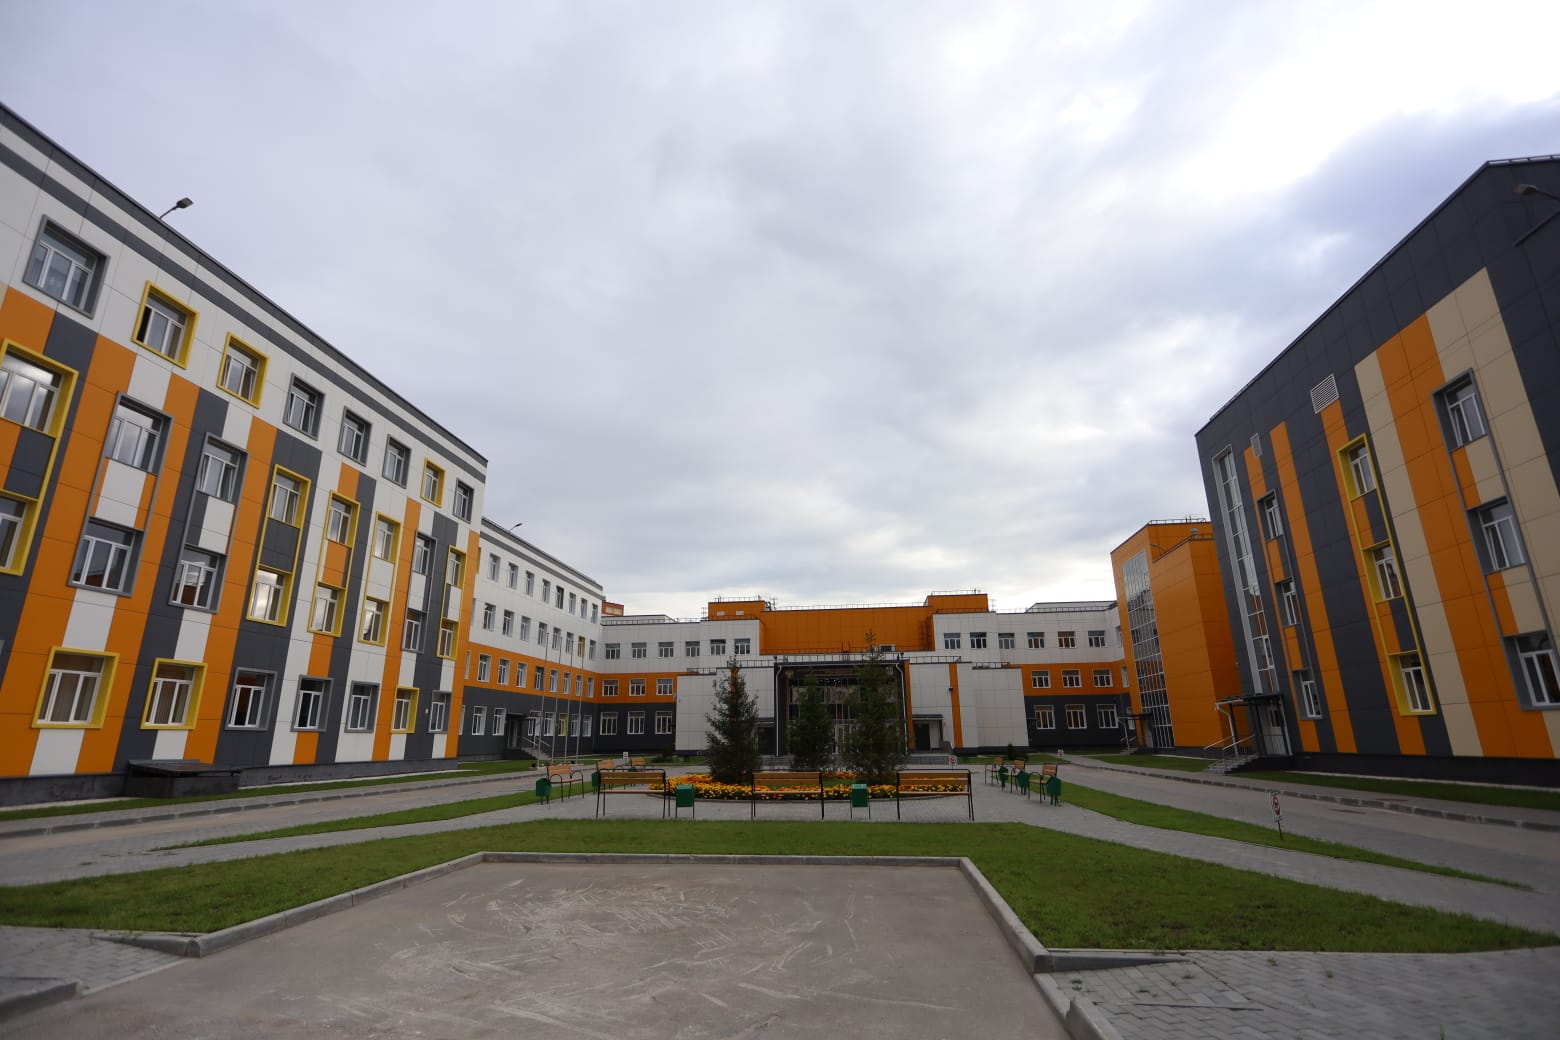 Как проходят общественную приемку школы Новосибирска?